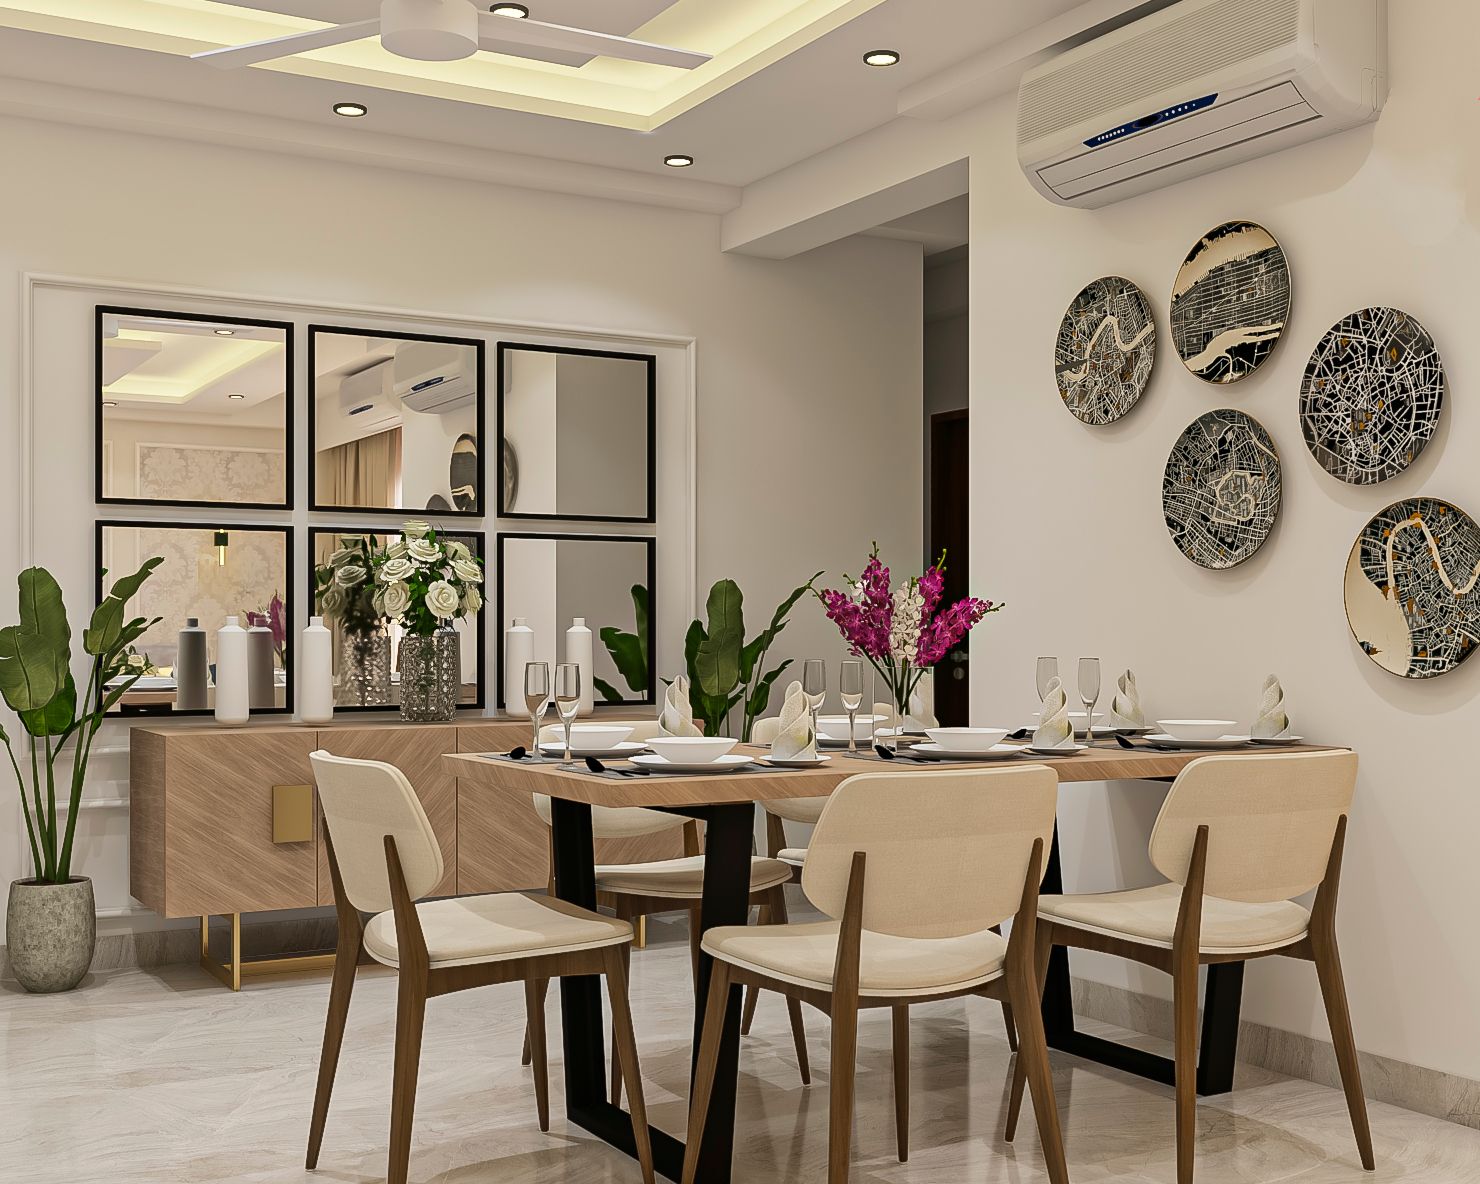 Dining Room Interior Design & Decor   Livspace